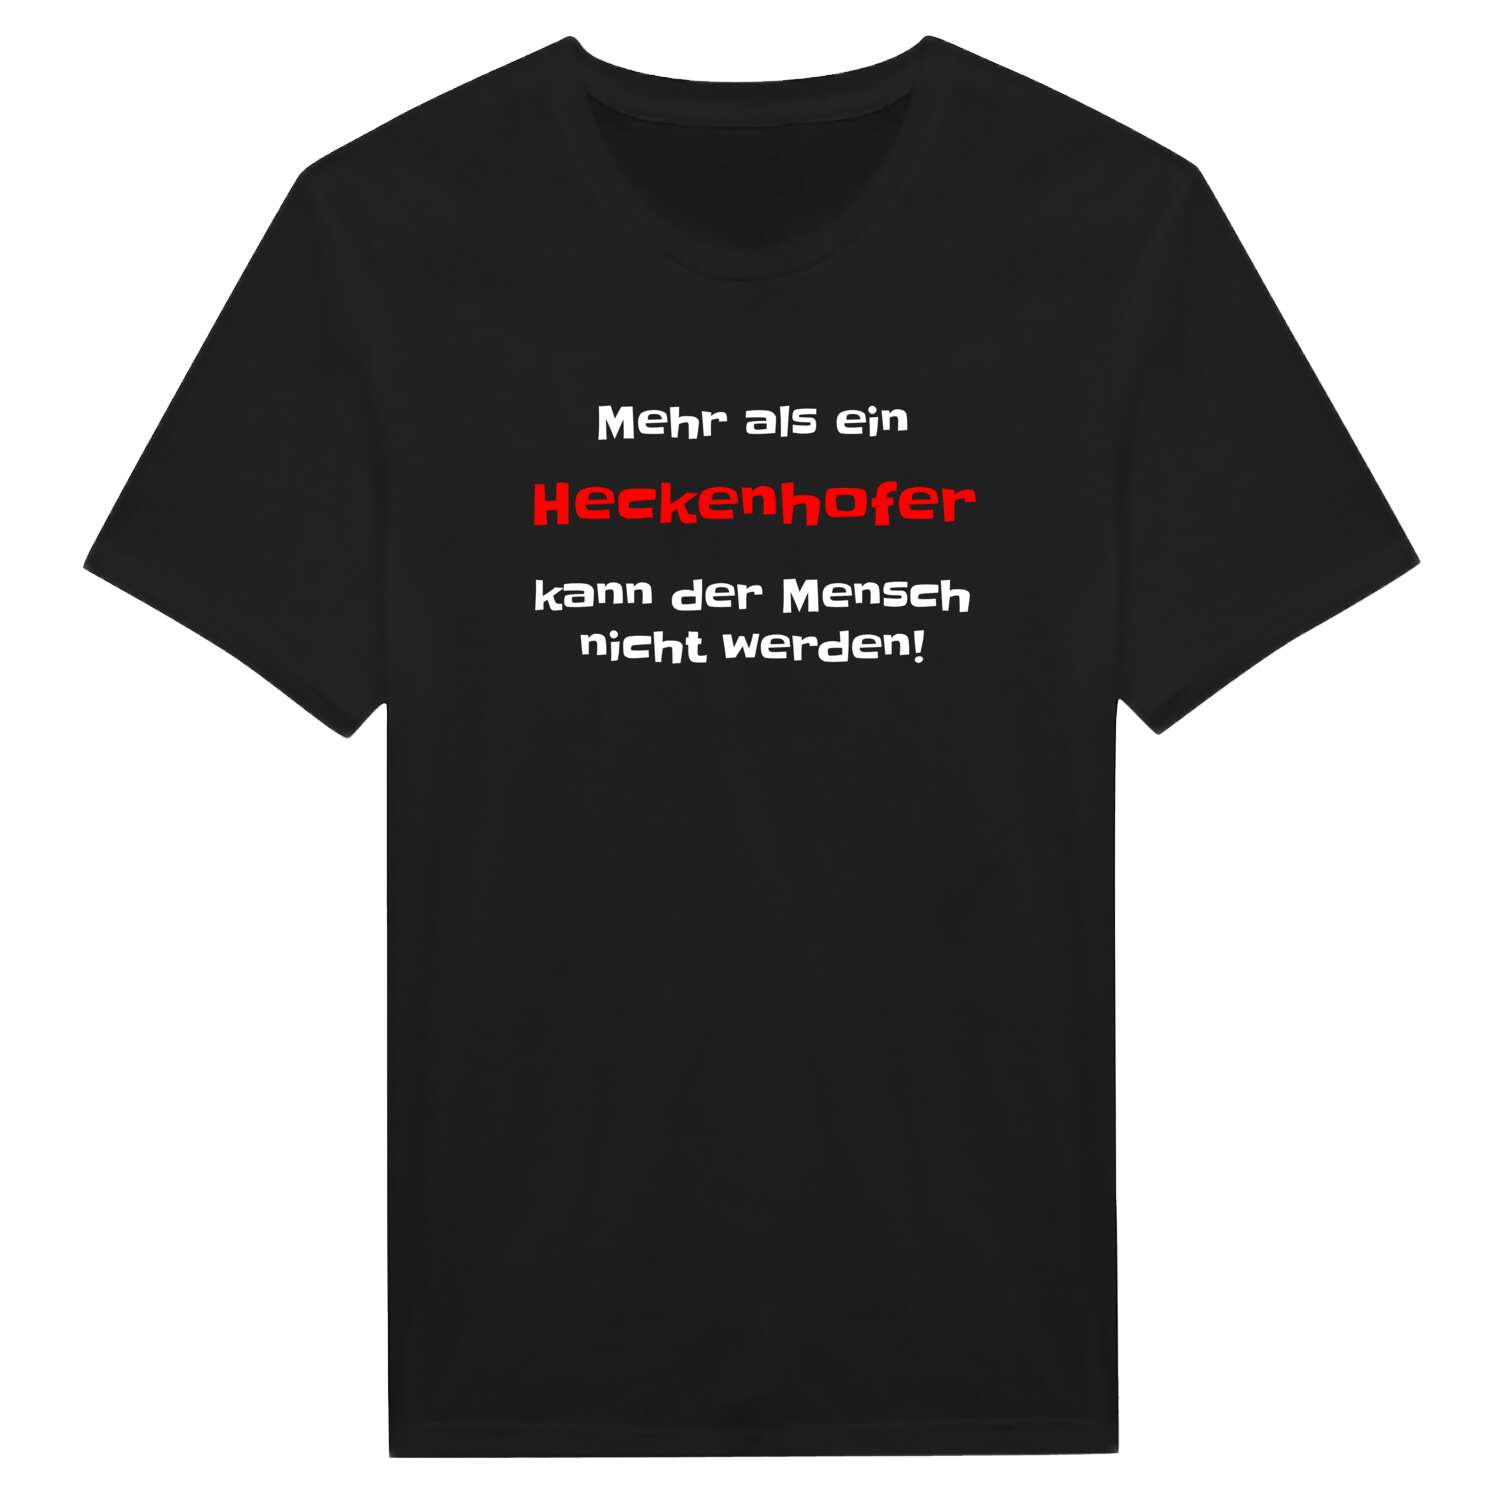 Heckenhof T-Shirt »Mehr als ein«